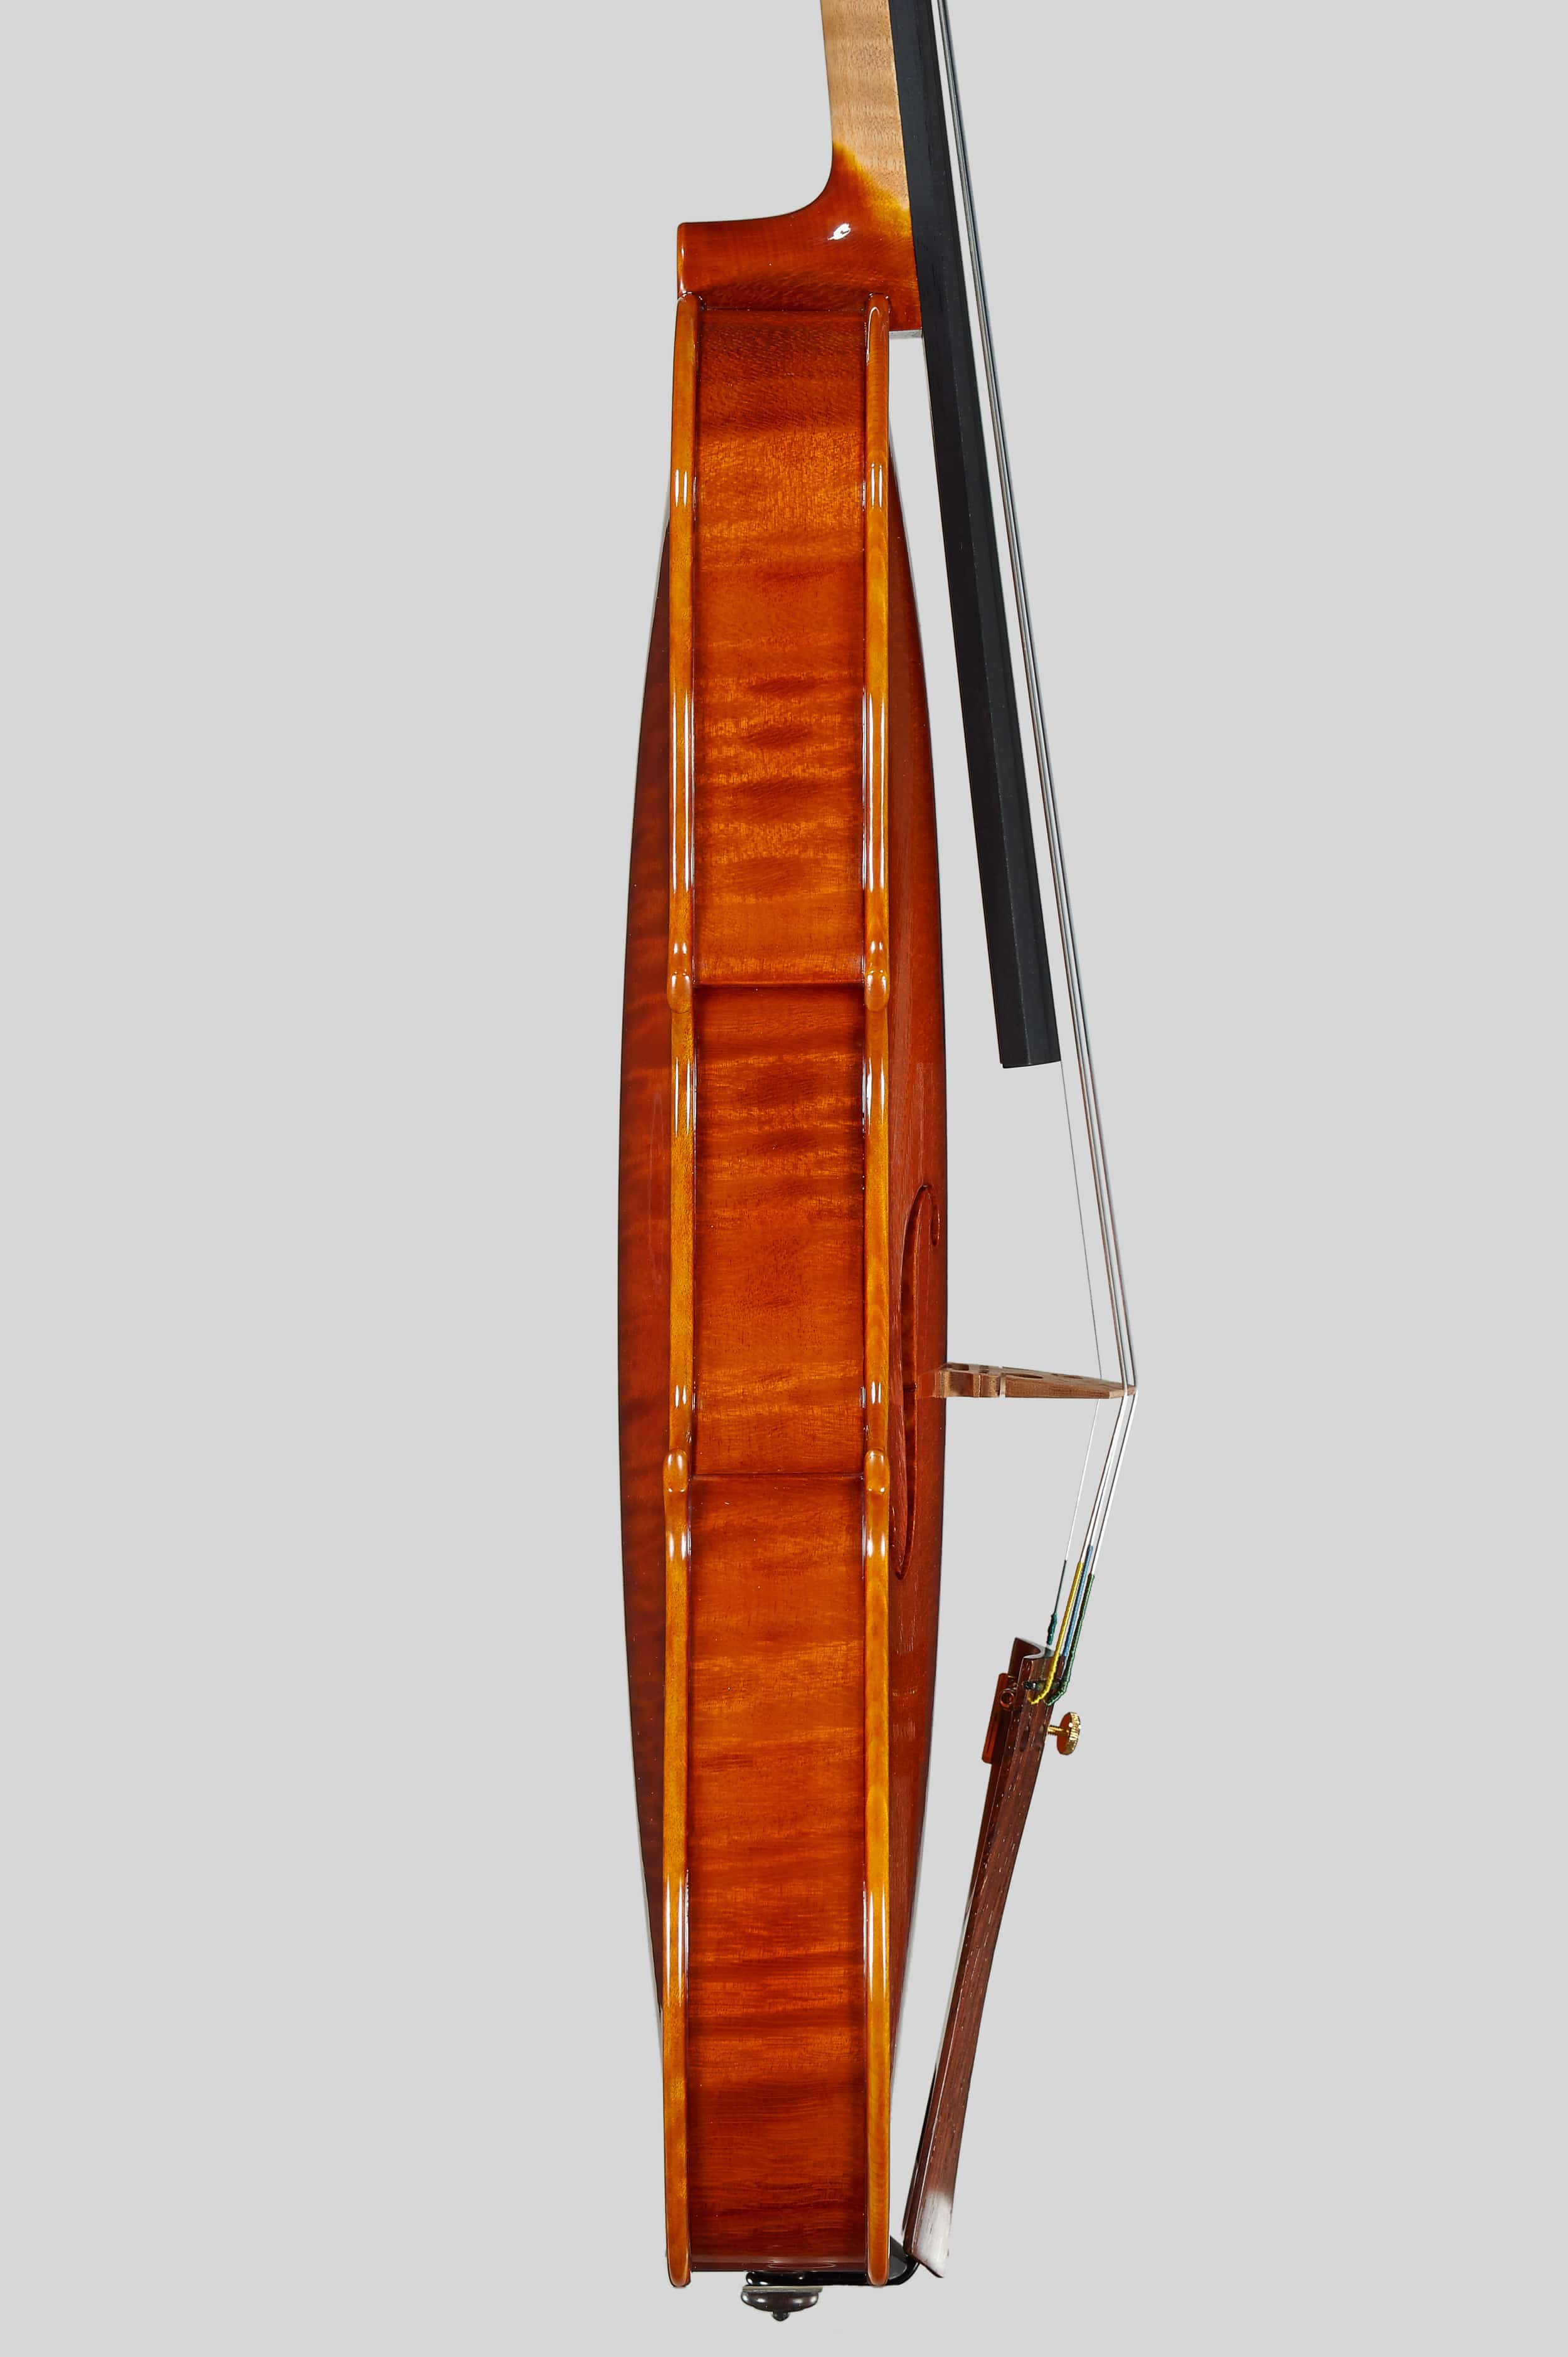 Anno 2014 – Violino modello stile A. Stradivari “Soil” 1714 - Profilo